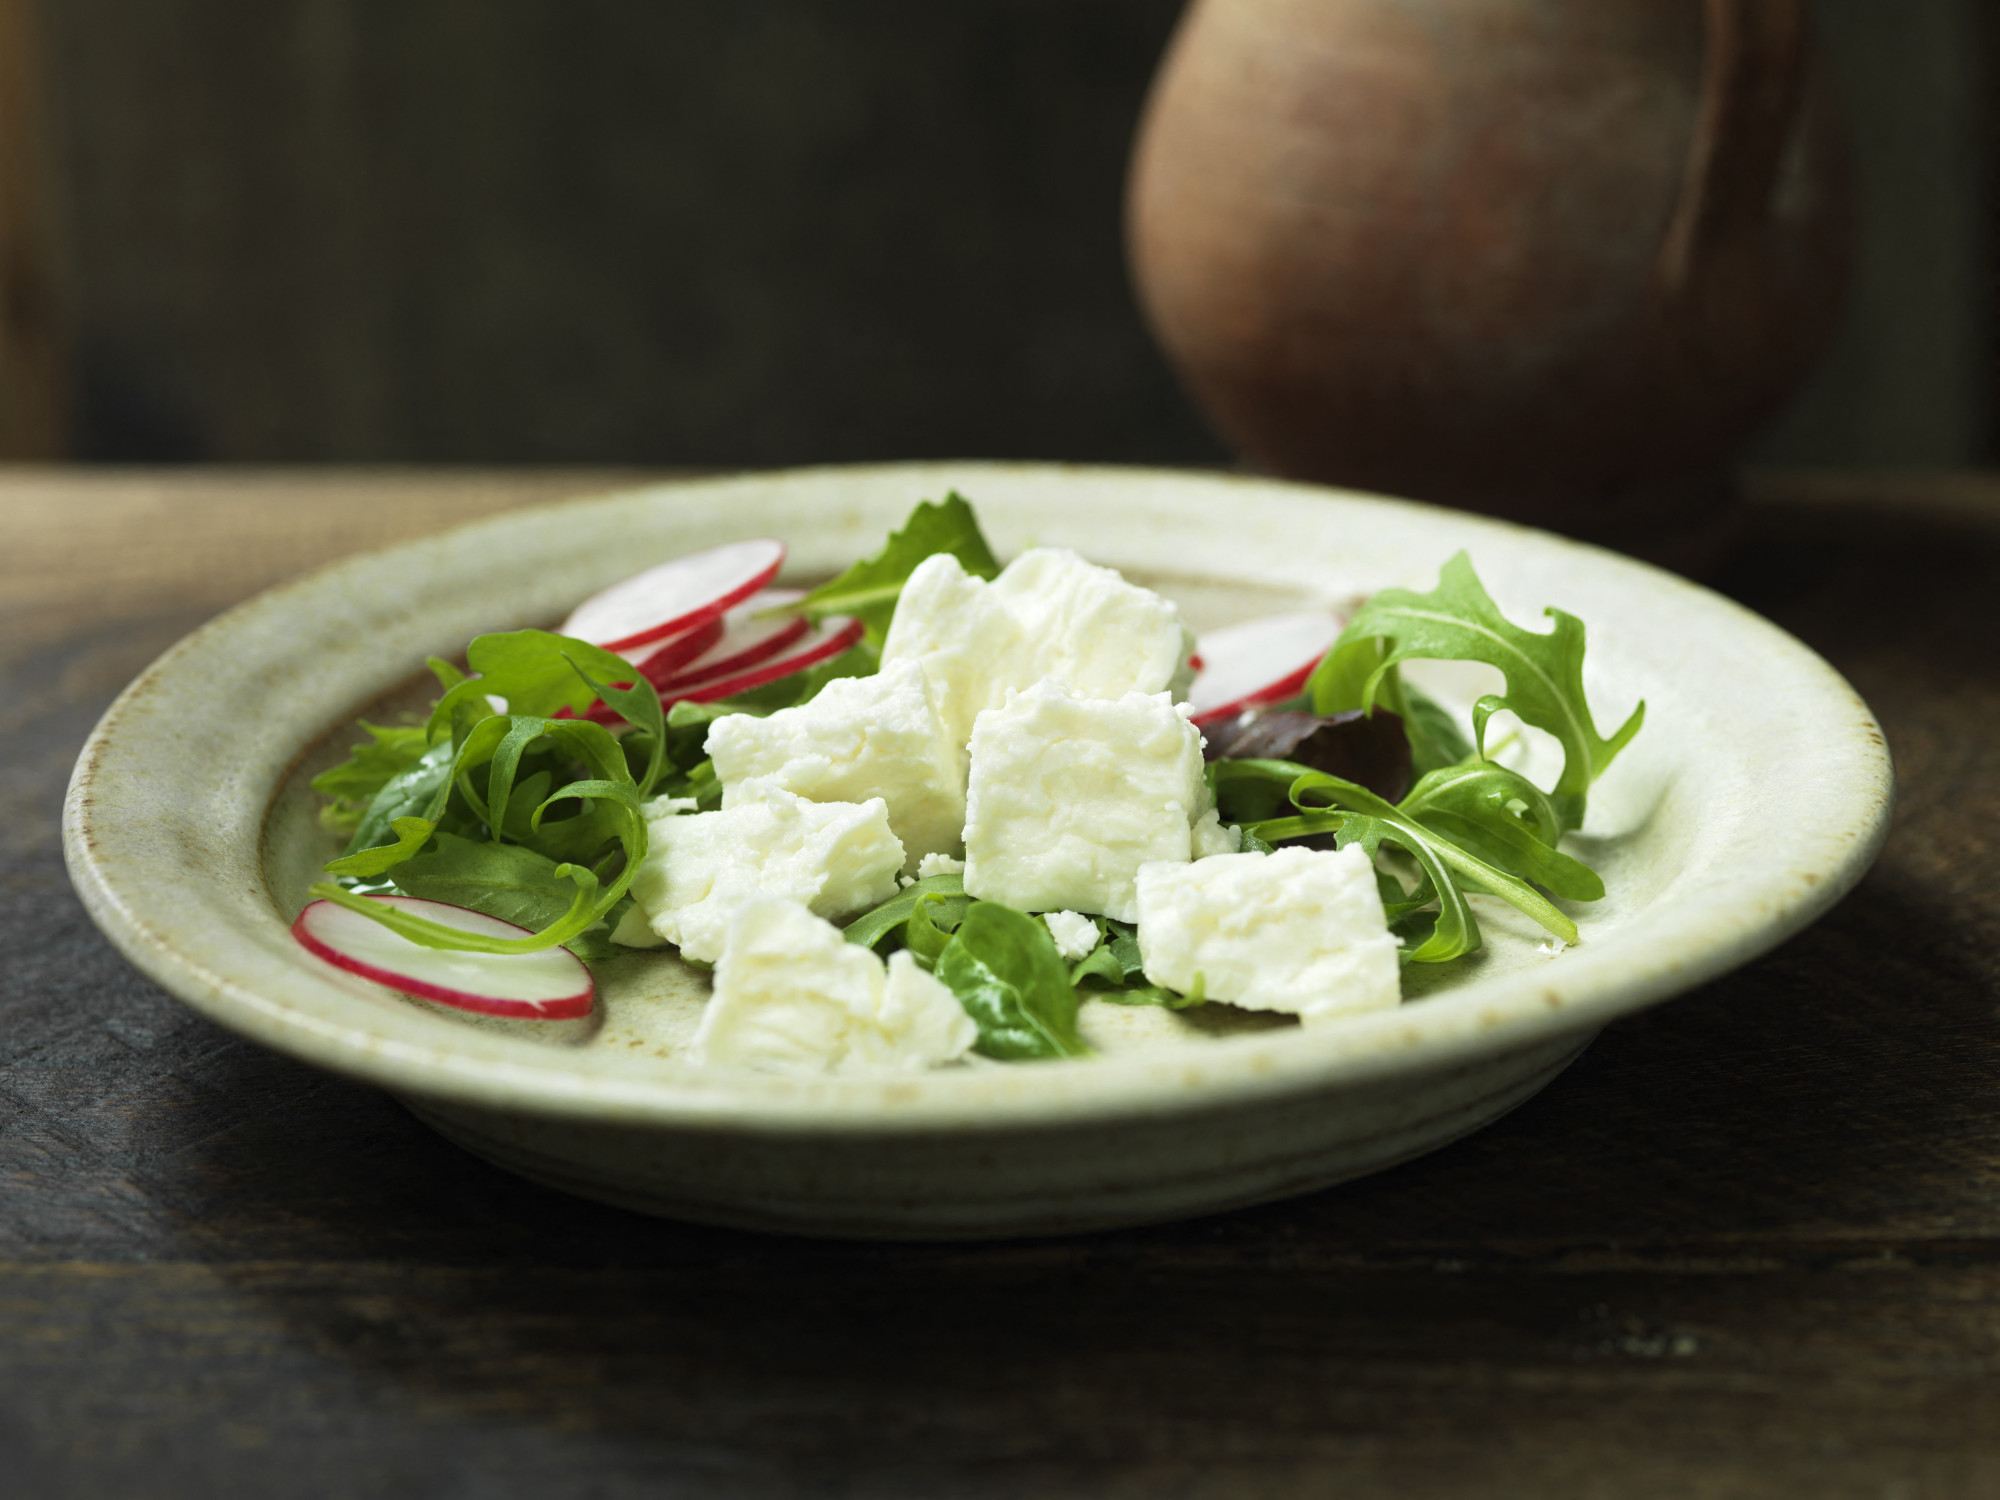 Botrány Görögországban: alig fért fel a feta a világ 100 legjobb sajtja közé